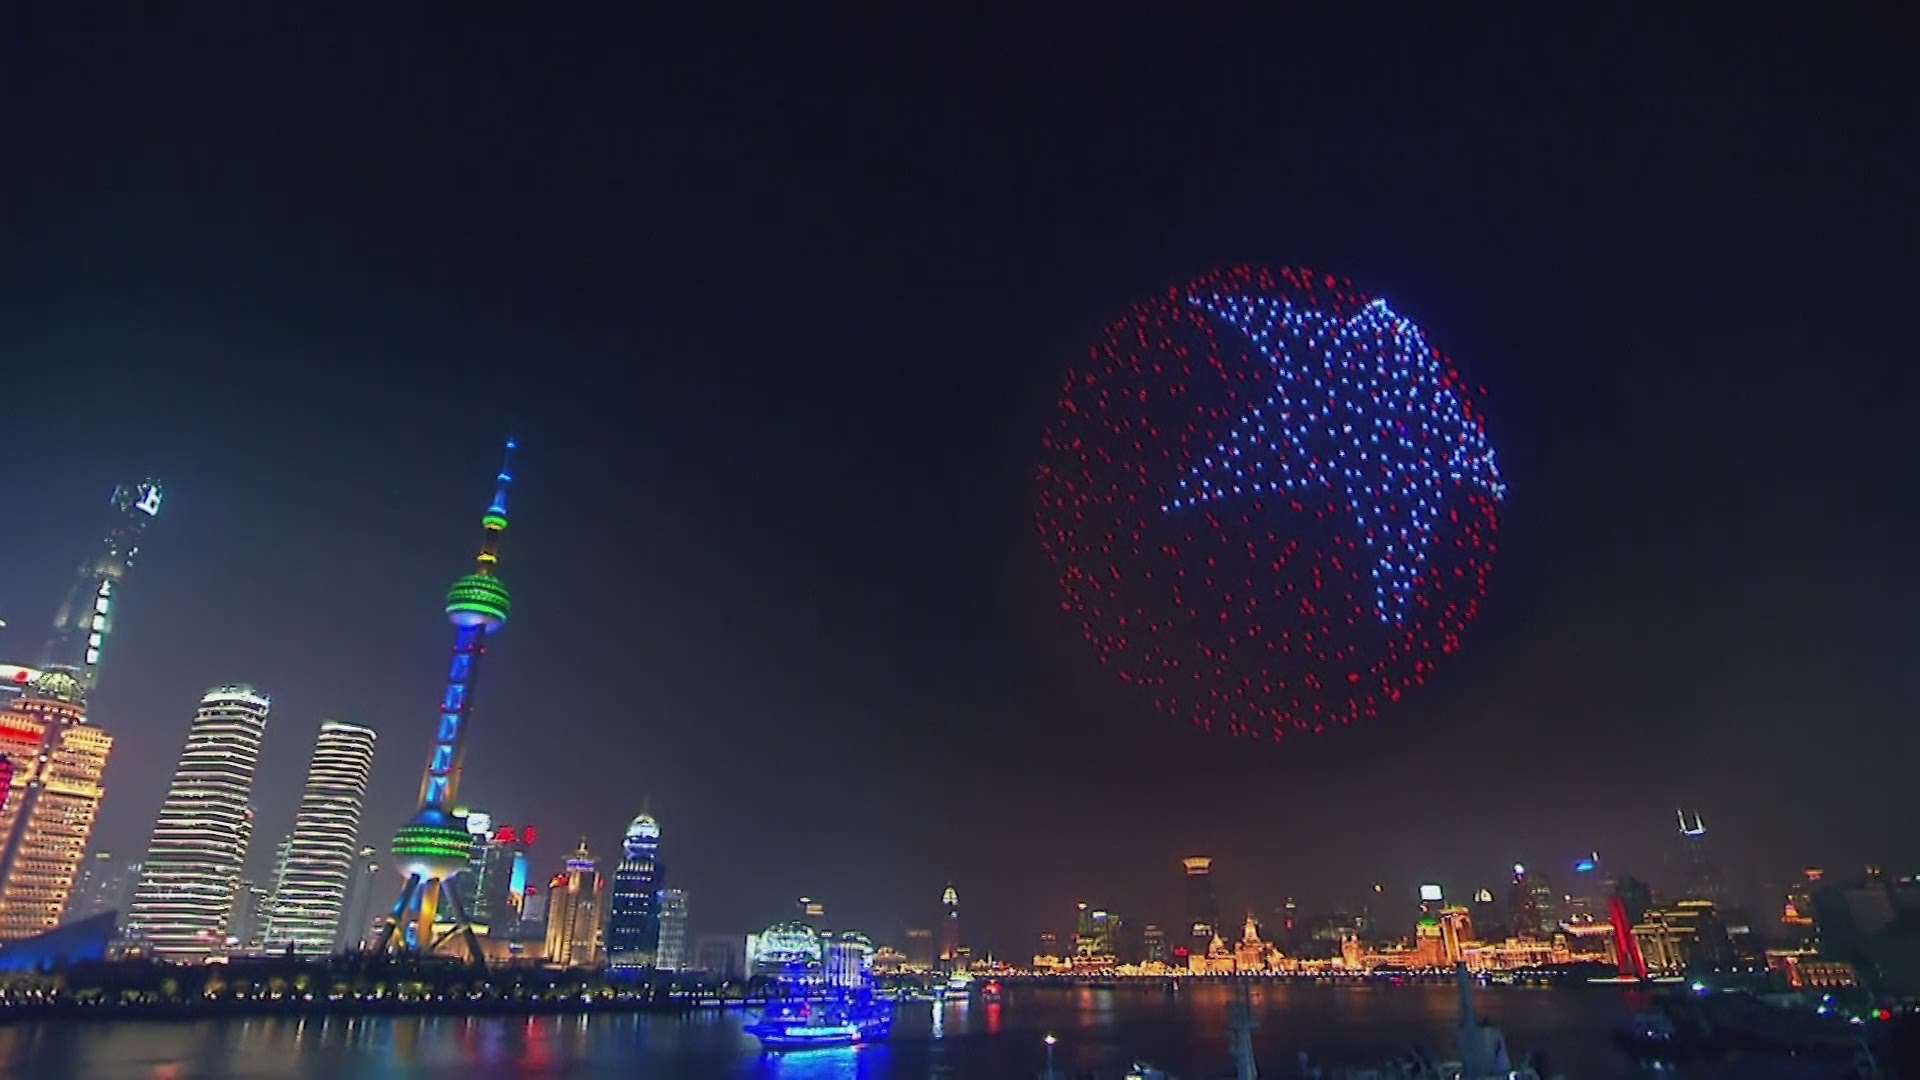 Des drones dans le ciel de Shangai remplacent les feux d'artifice. © China Global Television Network